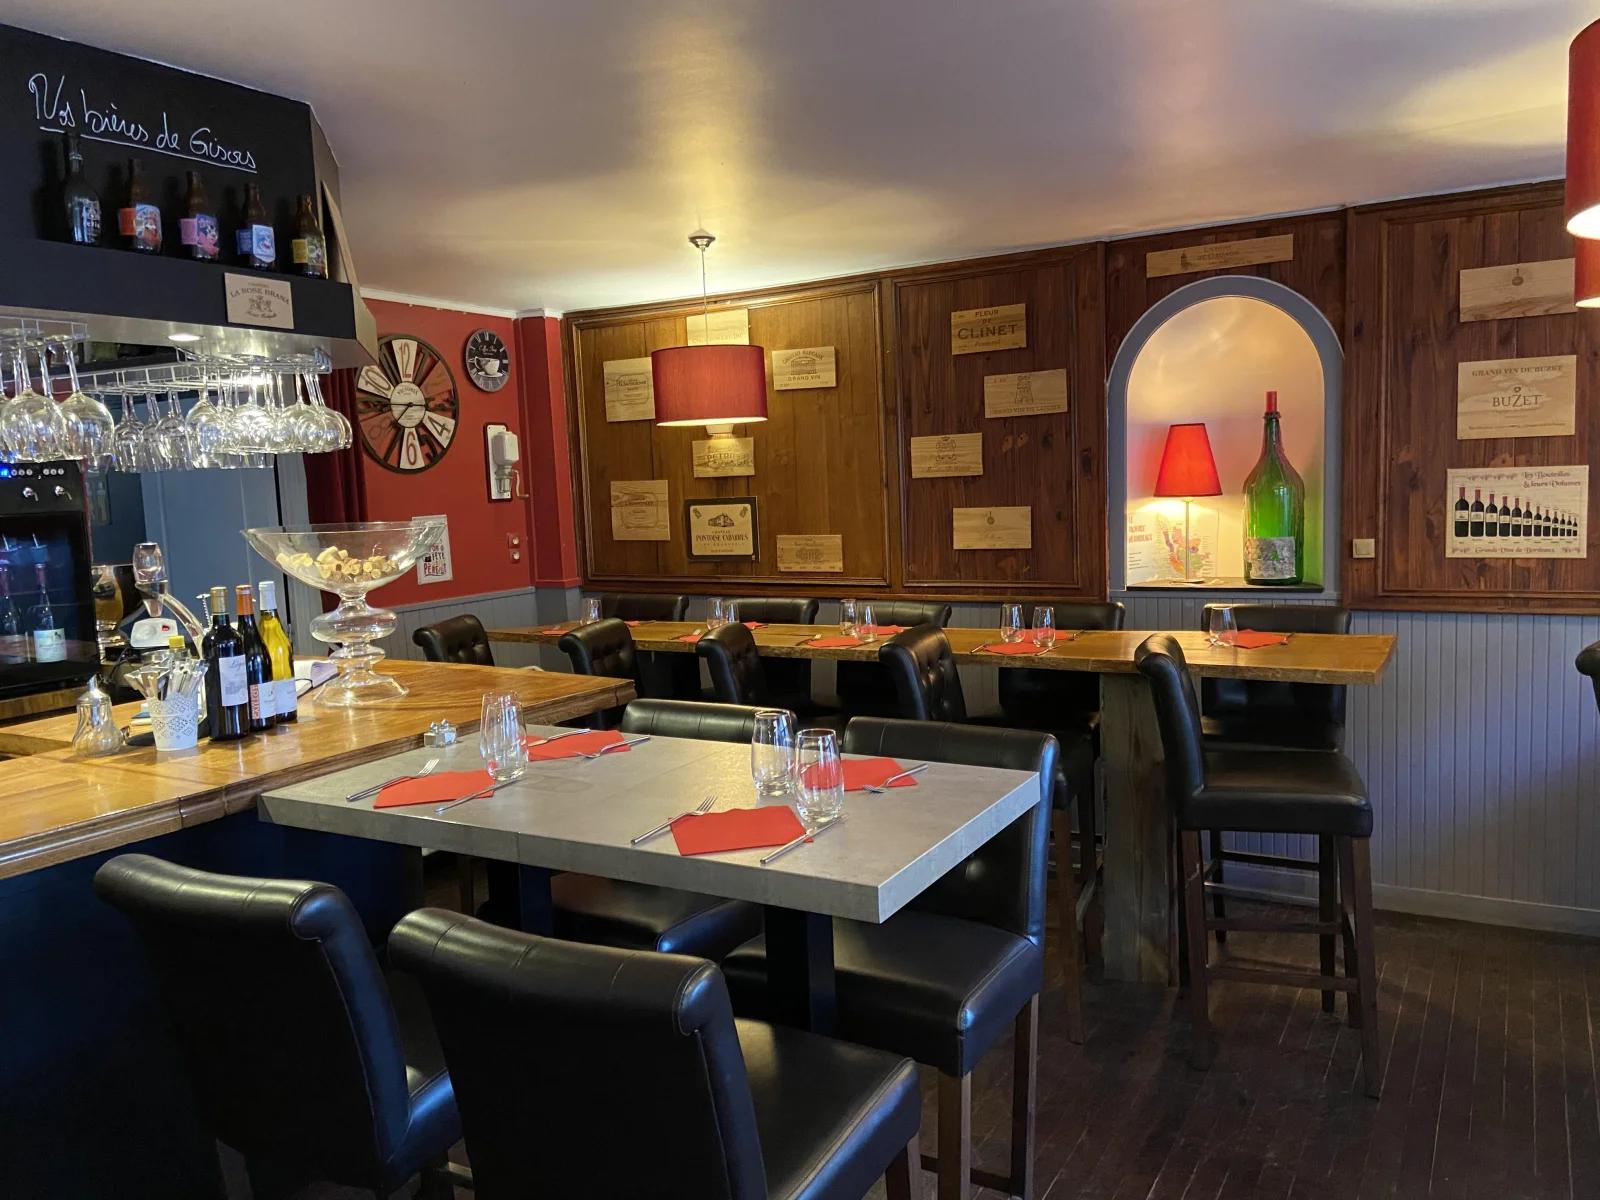 Salle de réunion dans Restaurant, bar à vin avec sa terrasse - 1